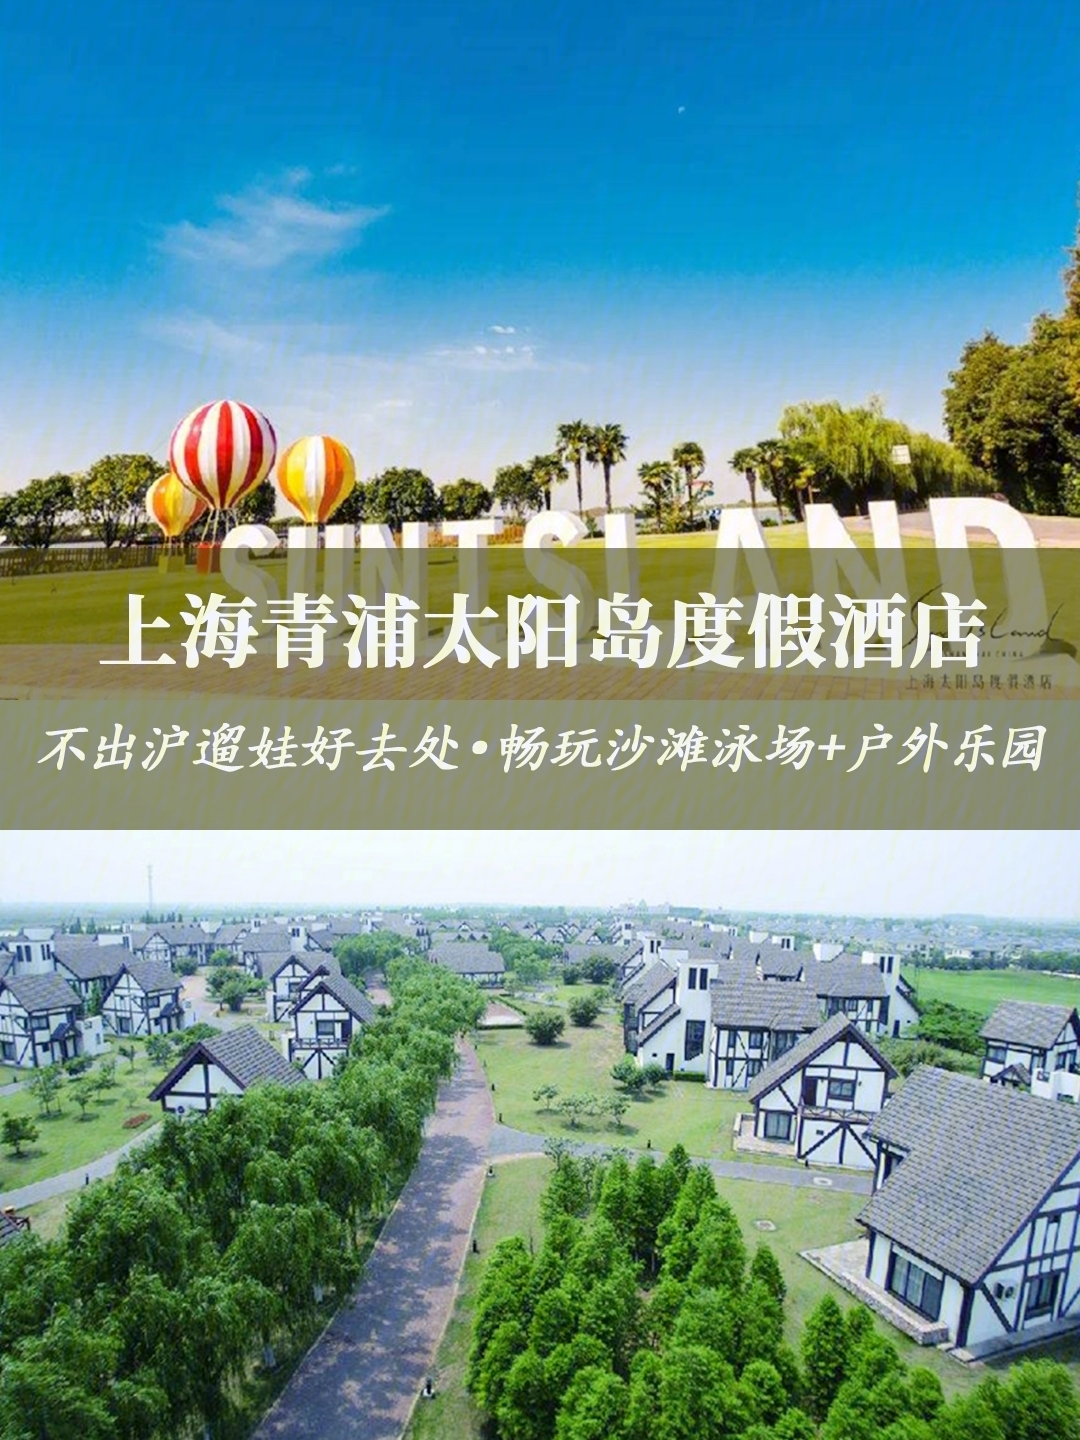 青浦太阳岛度假村地址图片